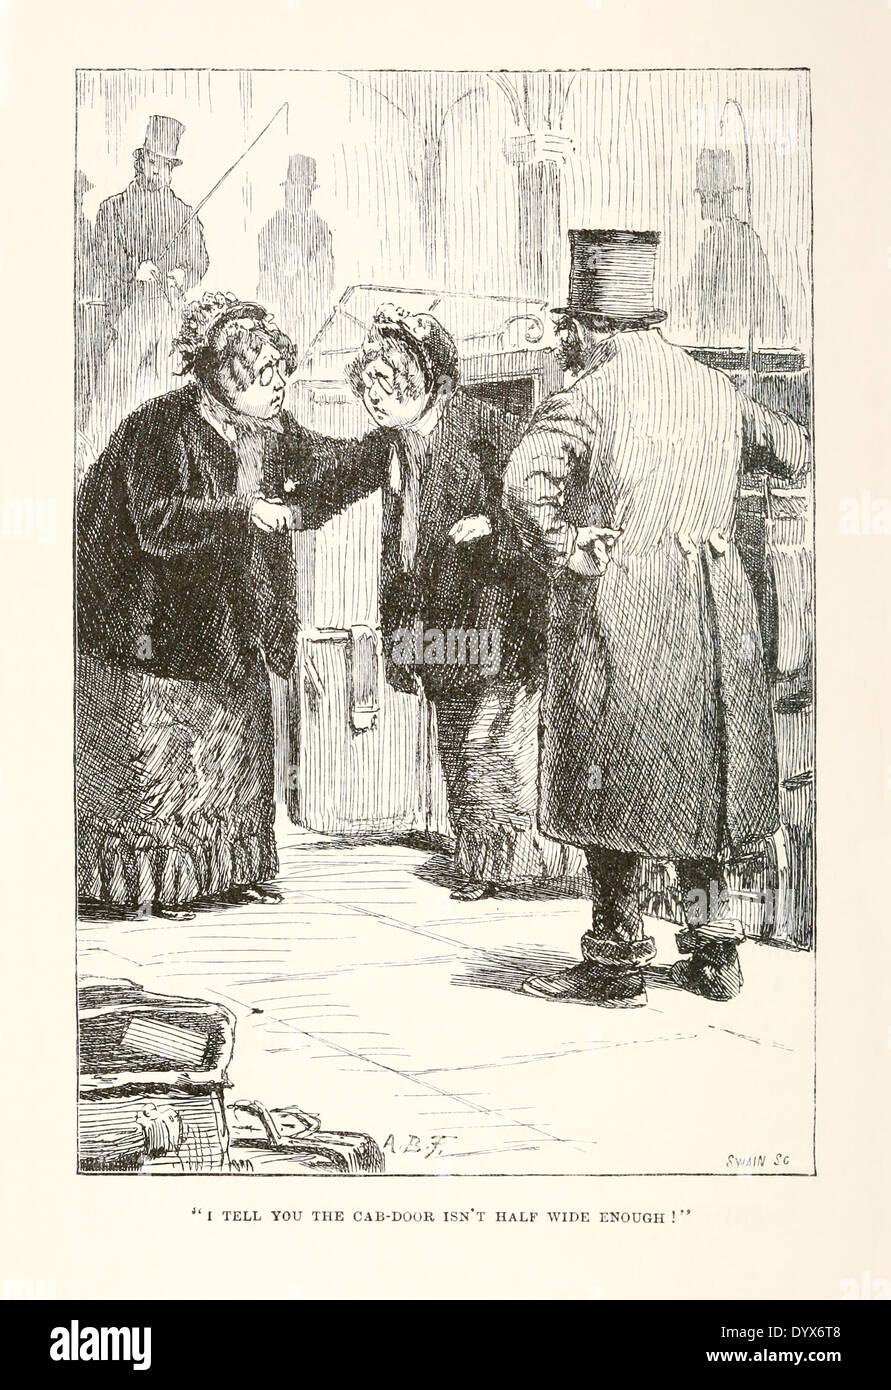 Arthur Burdett Frost (1851-1928) Illustration aus "A Tangled Tale" von Lewis Carroll veröffentlichte 1885. Verknoten Sie 7 "kleinlichen Cash". Stockfoto